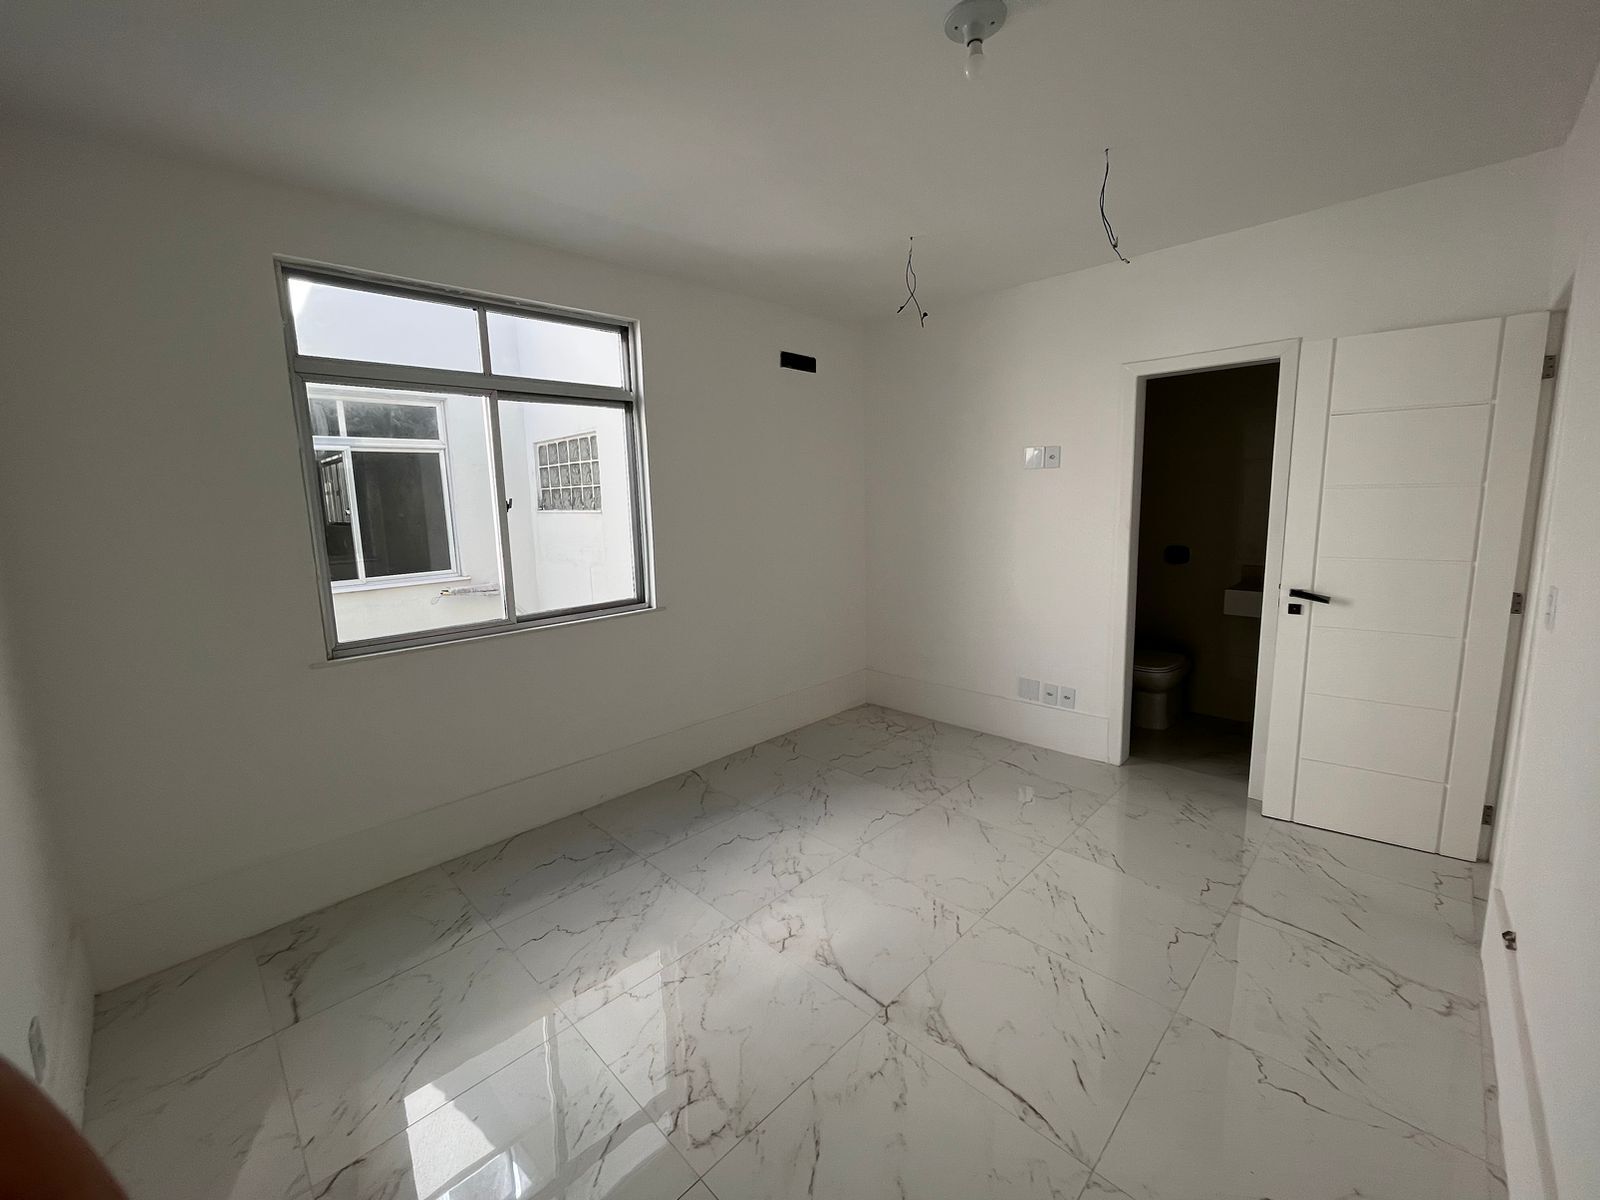 Cobertura Duplex no Condomínio Residencial Praia da Barra - Avenida Lúcio Costa 3500